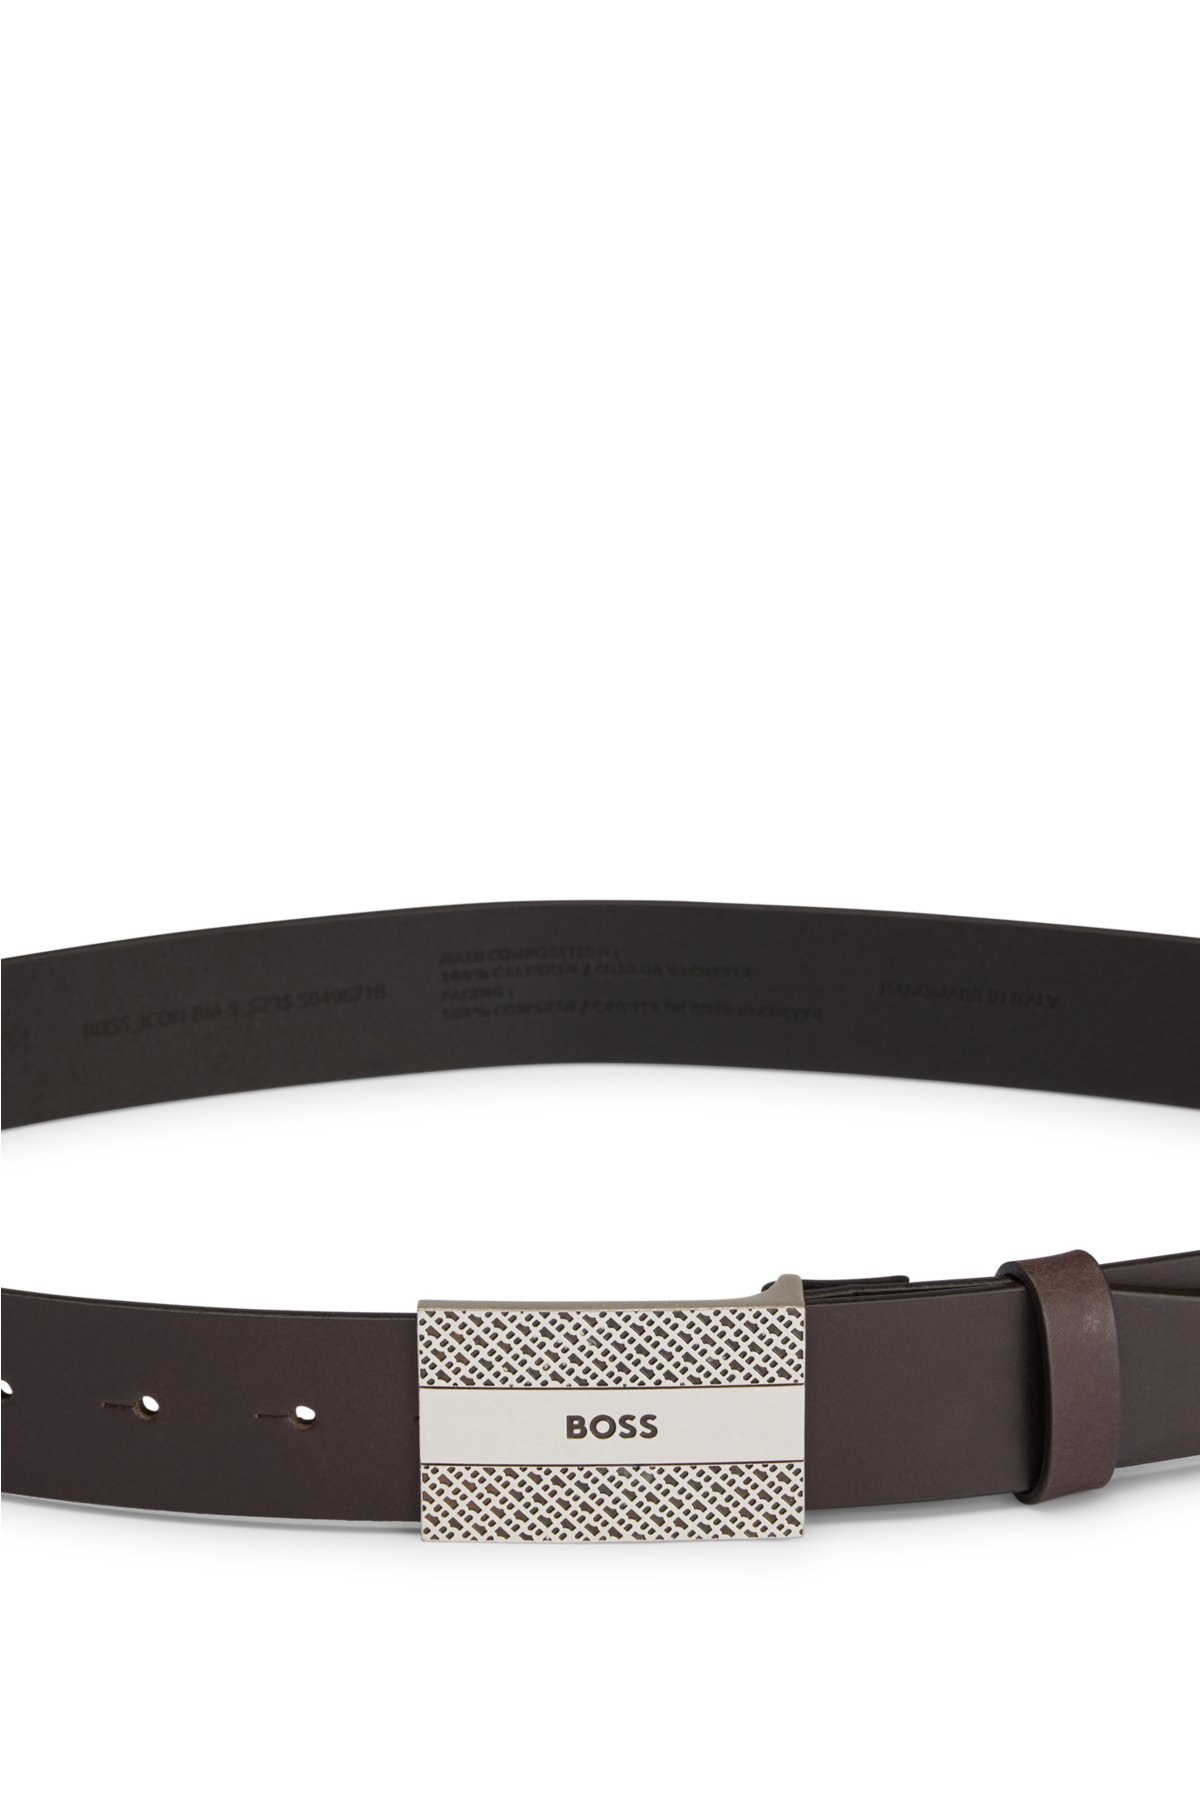 - Monogrammen der Koppelschließe auf Ledergürtel und Logo BOSS mit